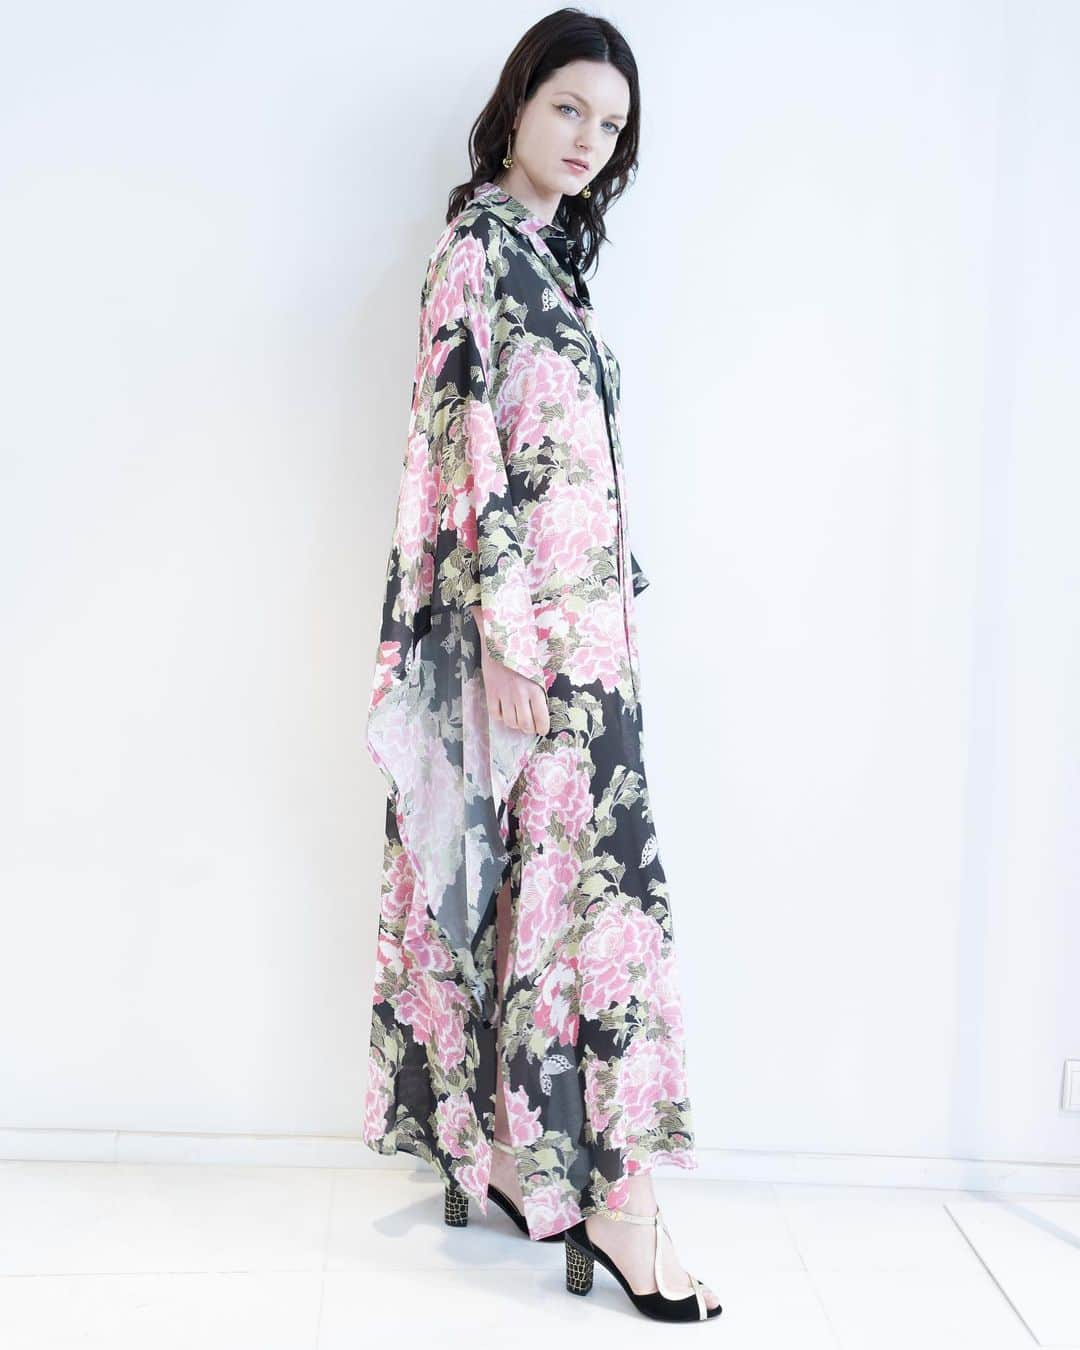 yumikatsuraさんのインスタグラム写真 - (yumikatsuraInstagram)「*﻿﻿ 菊柄の軽やかなシルクシフォン生地に﻿ きもの風袖のロングシャツで大胆に♡﻿ ﻿ リボンを首元に結んだり、﻿ 腰元で結んでブラウジングをしたり、﻿ さっと羽織りとして着てみたり。﻿ コーディネートが楽しめるきもの風のロングシャツはユミカツラのベストセラーです✨﻿ ﻿ きらきらのグリッターのブラックヒールを﻿ アクセントにあわせてみて👠﻿ ﻿ -------------------------﻿ ﻿ 結婚式やパーティーに出席する際、 あるいは、 人生の大切な一場面﻿﻿ 女性にとって靴はお洒落をする上で大切なアイテムである一方、 ヒールの高い靴はどうしても痛みが伴います。 ﻿﻿ ﻿﻿ どんなシーンでも綺麗でいたい！という女性の夢を応援👠﻿﻿ デザイン・高さをワンクリックで自由に付け替えできる世界初のヒールを限定販売♡﻿﻿ ﻿﻿ 女性の人生のさまざまな側面や日常生活のさまざまなイベントに適応できる靴、自由な選択を。そんなTanya Heath Parisと、70万人以上の女性の幸せと妥協しない美しさを追求し続けてきたYumi Katsuraがコラボレーション。ECサイトでの限定販売や、Yumi Katsura クリエイティブチームによる小物＆アクセサリーオーダー会も。﻿﻿ ﻿﻿ @yumikatsurajapan 是非フォローして下さいね♪﻿﻿ ﻿﻿ -------------------------﻿﻿ ﻿﻿ ﻿﻿﻿﻿﻿コラボレーションヒールは、 Yumi Katsuraが毎年パリコレで発表する日本の伝統美をいかしたドレスコレクションより、 国内外で人気の葛飾北斎の波柄をフューチャー。﻿﻿ ﻿﻿ 2020年6月15日（月）から21日（日）までの2週間、 Yumi Katsura公式ECサイトにて、 期間限定予約販売を行います。 パリ本店でしかゲットできないシューズやヒールも特別にお取り扱いしています。 ﻿﻿ ﻿﻿ https://www.yumikatsura.com/item﻿﻿ ﻿﻿ Yumi Katsura公式ECサイトでは、 パリクチュールコレクションで発表したドレスのテクニック・モチーフを使用したプレタポルテコレクションも販売中。 ﻿﻿ 日本の伝統美とクチュールテクニックをたっぷりいかしたスペシャルなコレクションを、 5万円～20万円の価格帯で気軽にお楽しみいただけます👗﻿﻿ ﻿﻿ ﻿﻿﻿﻿﻿ -------------------------﻿﻿﻿﻿﻿﻿﻿﻿﻿﻿﻿ ﻿﻿﻿﻿﻿﻿﻿ 花嫁さまの憧れ「ジューンブライド（June bride）」とは、古くからヨーロッパで「6月に結婚する花嫁は幸せになれる」とされる言い伝え。そんなジューンブライドにちなんで、6月はユミカツラより、プレ花嫁さまを応援する夢の詰まった特別企画を毎週お届けします♡﻿﻿﻿﻿﻿﻿﻿ 公式HP&インスタをチェックしてね！﻿﻿﻿﻿﻿﻿﻿ ﻿﻿﻿﻿﻿﻿﻿ -------------------------﻿﻿﻿﻿﻿﻿﻿ ﻿﻿﻿﻿﻿﻿﻿ .﻿﻿﻿﻿﻿﻿﻿﻿﻿﻿﻿ .﻿﻿﻿﻿﻿﻿﻿﻿﻿﻿﻿ .﻿﻿﻿﻿﻿﻿﻿﻿﻿﻿﻿ @tanyaheathparisofficial ﻿ @tanyaheathparisjapan ﻿ @yumikatsurajapan ﻿ Photo by @yosuketphoto  Hair & Make @junkonakano_paris  Styling @yuitamura0u0  #yumikatsura #ユミカツラ #桂由美 #桂由美ドレス #YumiBrides #tanyaheath #tanyaheathparis #heelchanger #changableheels #createyourownshoes﻿ #ファッションコーデ #世界初 #春夏コーデ #お洒落女子 #靴好きな人と繋がりたい #ハイヒール大好き #お洒落さんと繋がりたい #heels #highfashion #ootd #ootdfashion #東京ファッション #きものコーディネート #きもの女子 #日本の美 #japanesedesigners #ロングシャツ #ロングシャツコーデ」6月16日 21時49分 - yumikatsurajapan